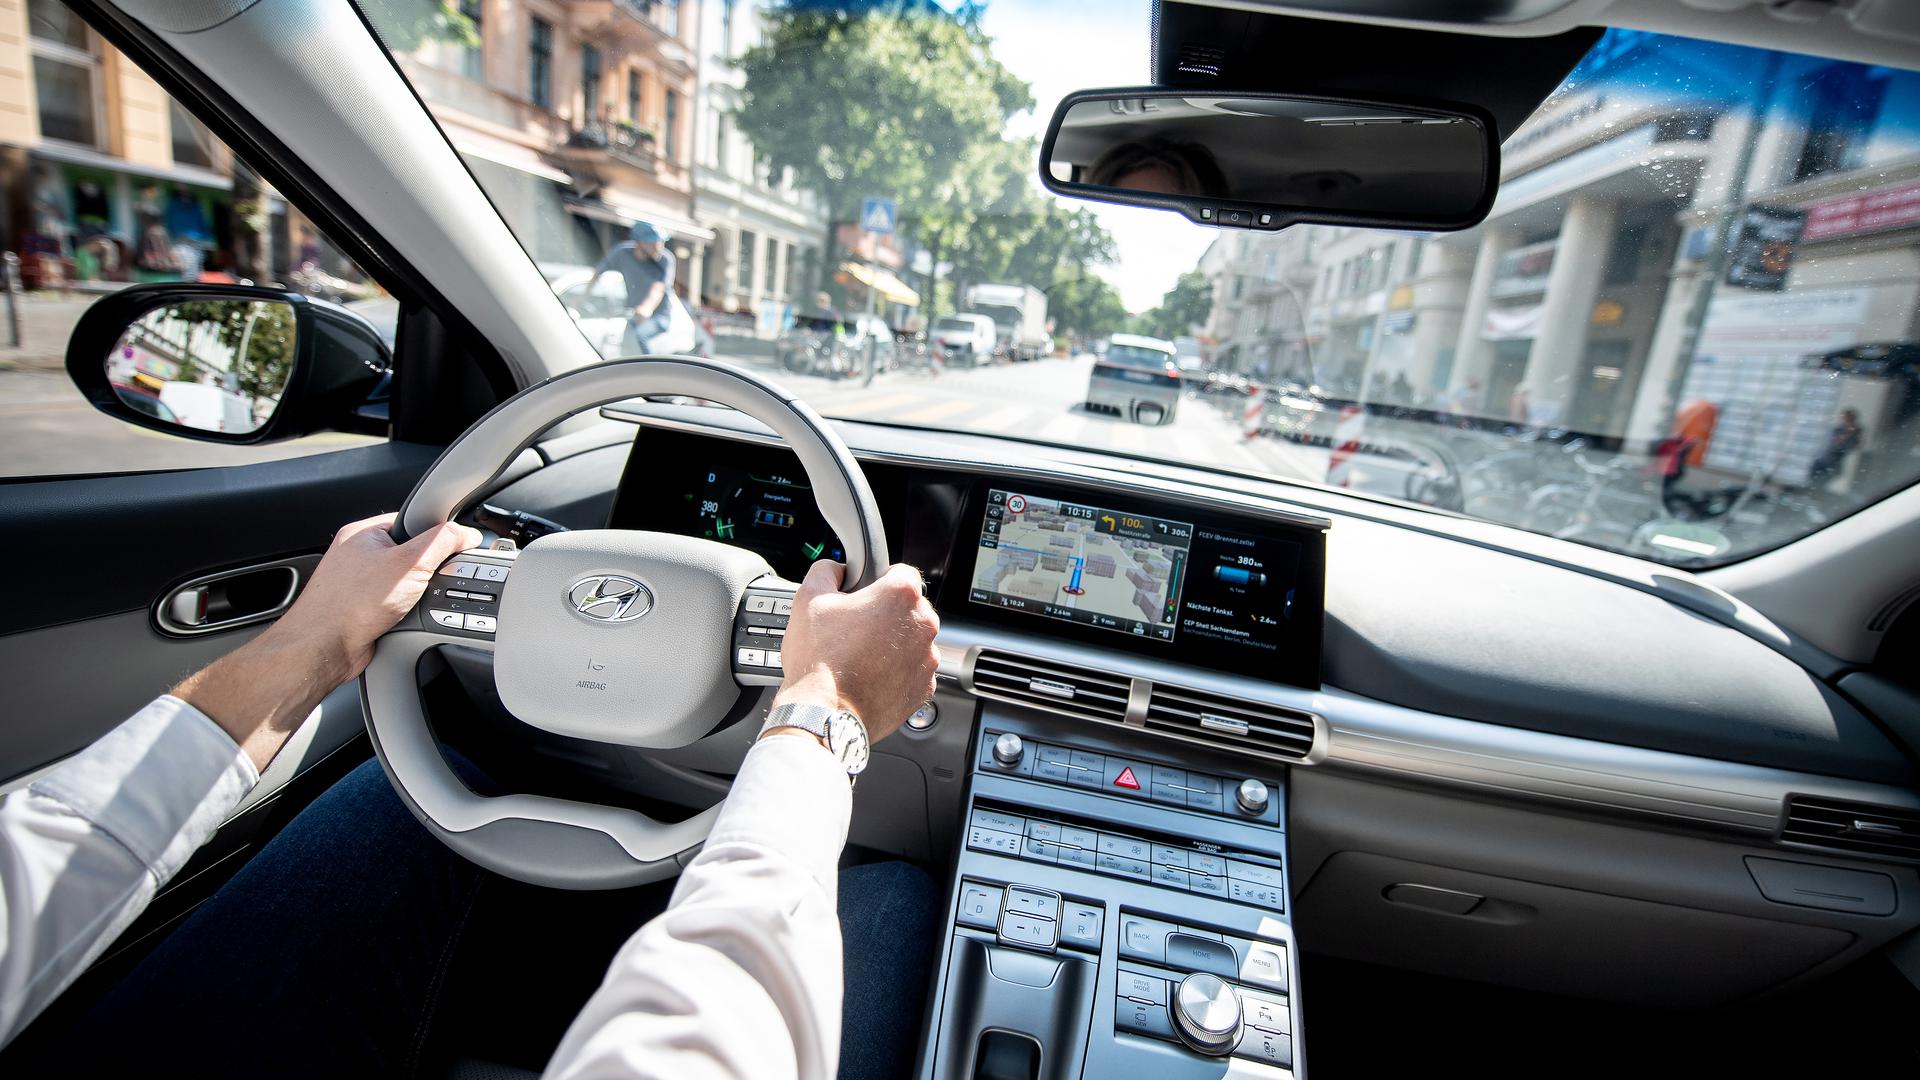 Moderne Navigationssysteme erleichtern das Fahren im Auto. In Zukunft werden sich die intelligenten, sprachgesteuerten Fahrzeuge noch mehr auf die Nutzer einstellen und an ihre Bedürfnisse „denken“.